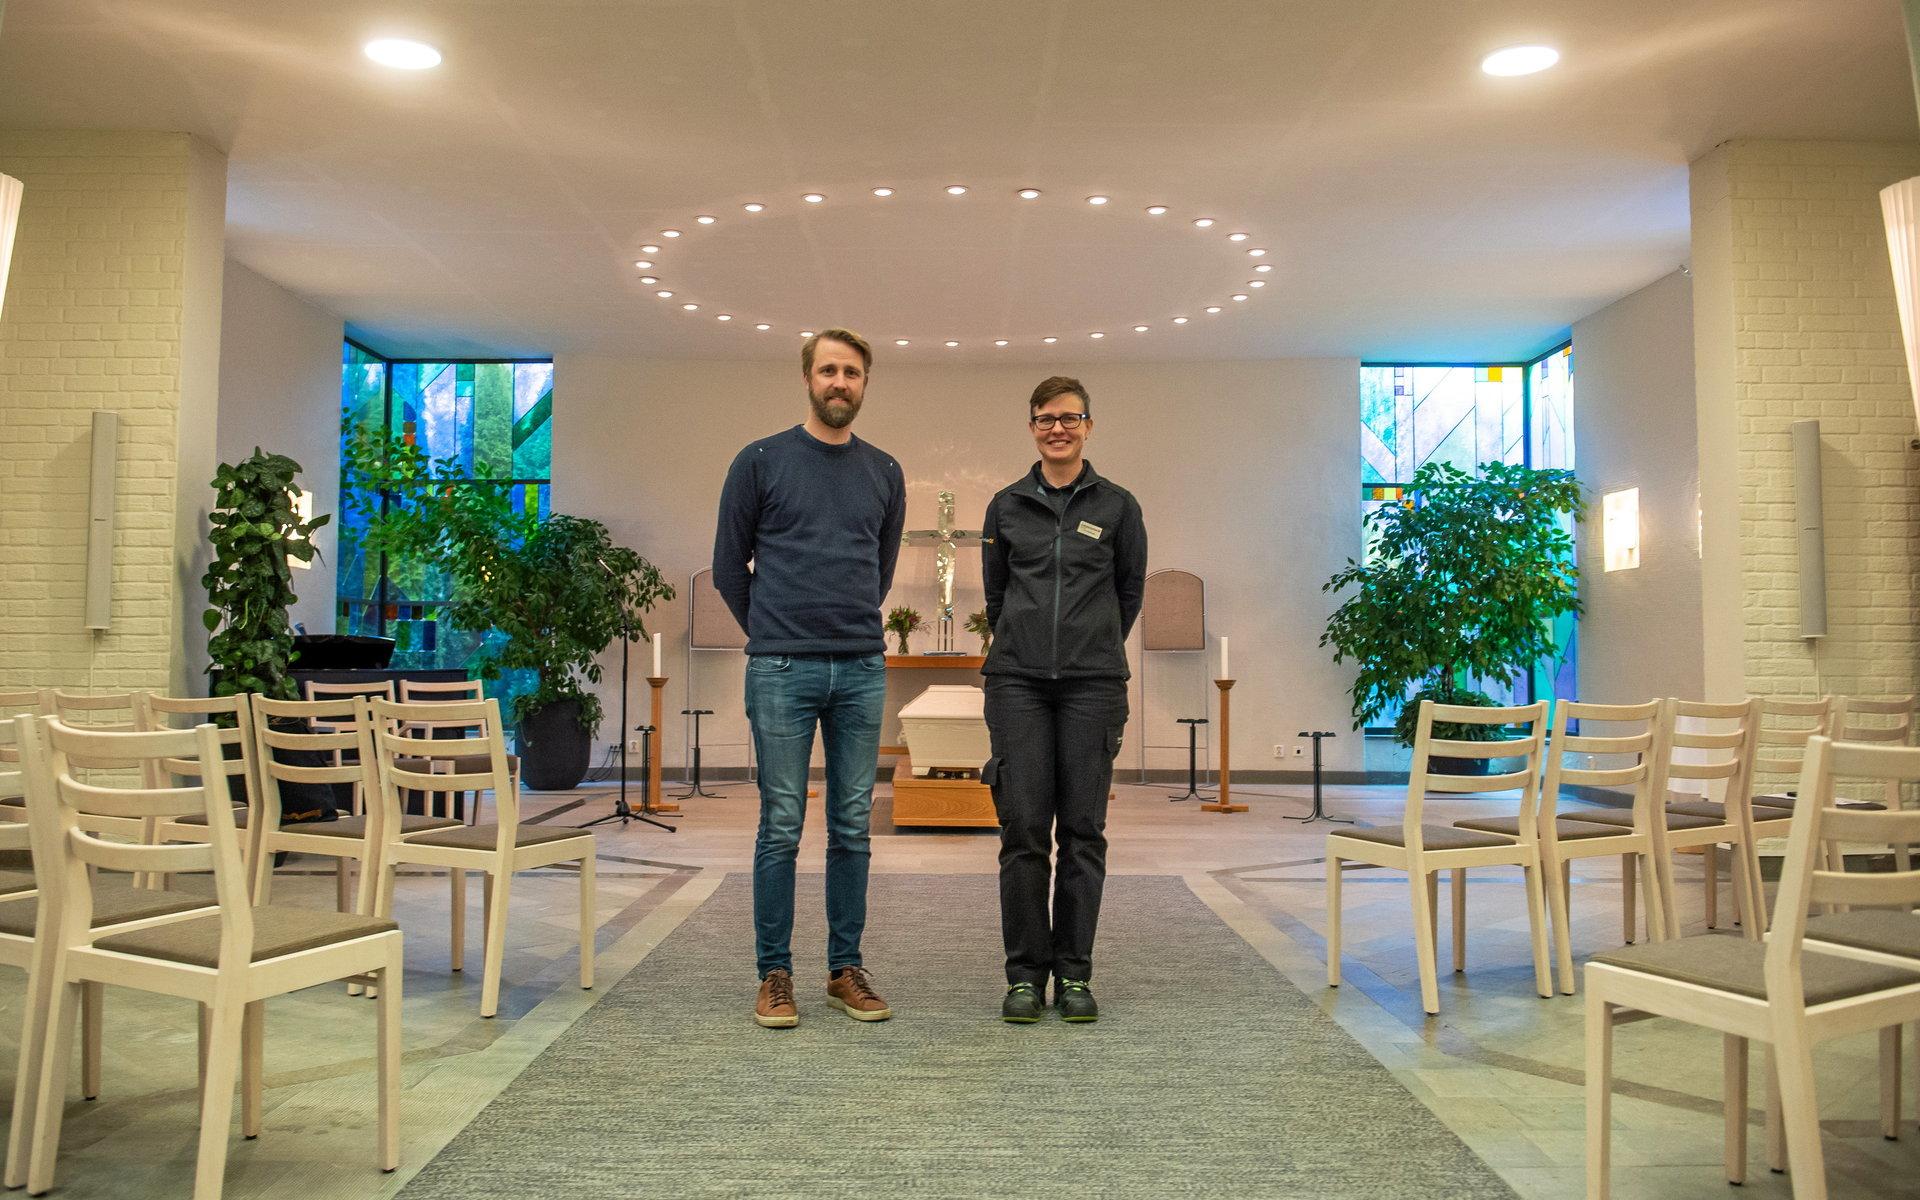 Alexander och Ylva har jobbat i Alingsås pastorat i över tio år. De berättar att de älskar sina jobb och att de som jobbar i verksamheten är väldigt glada människor.